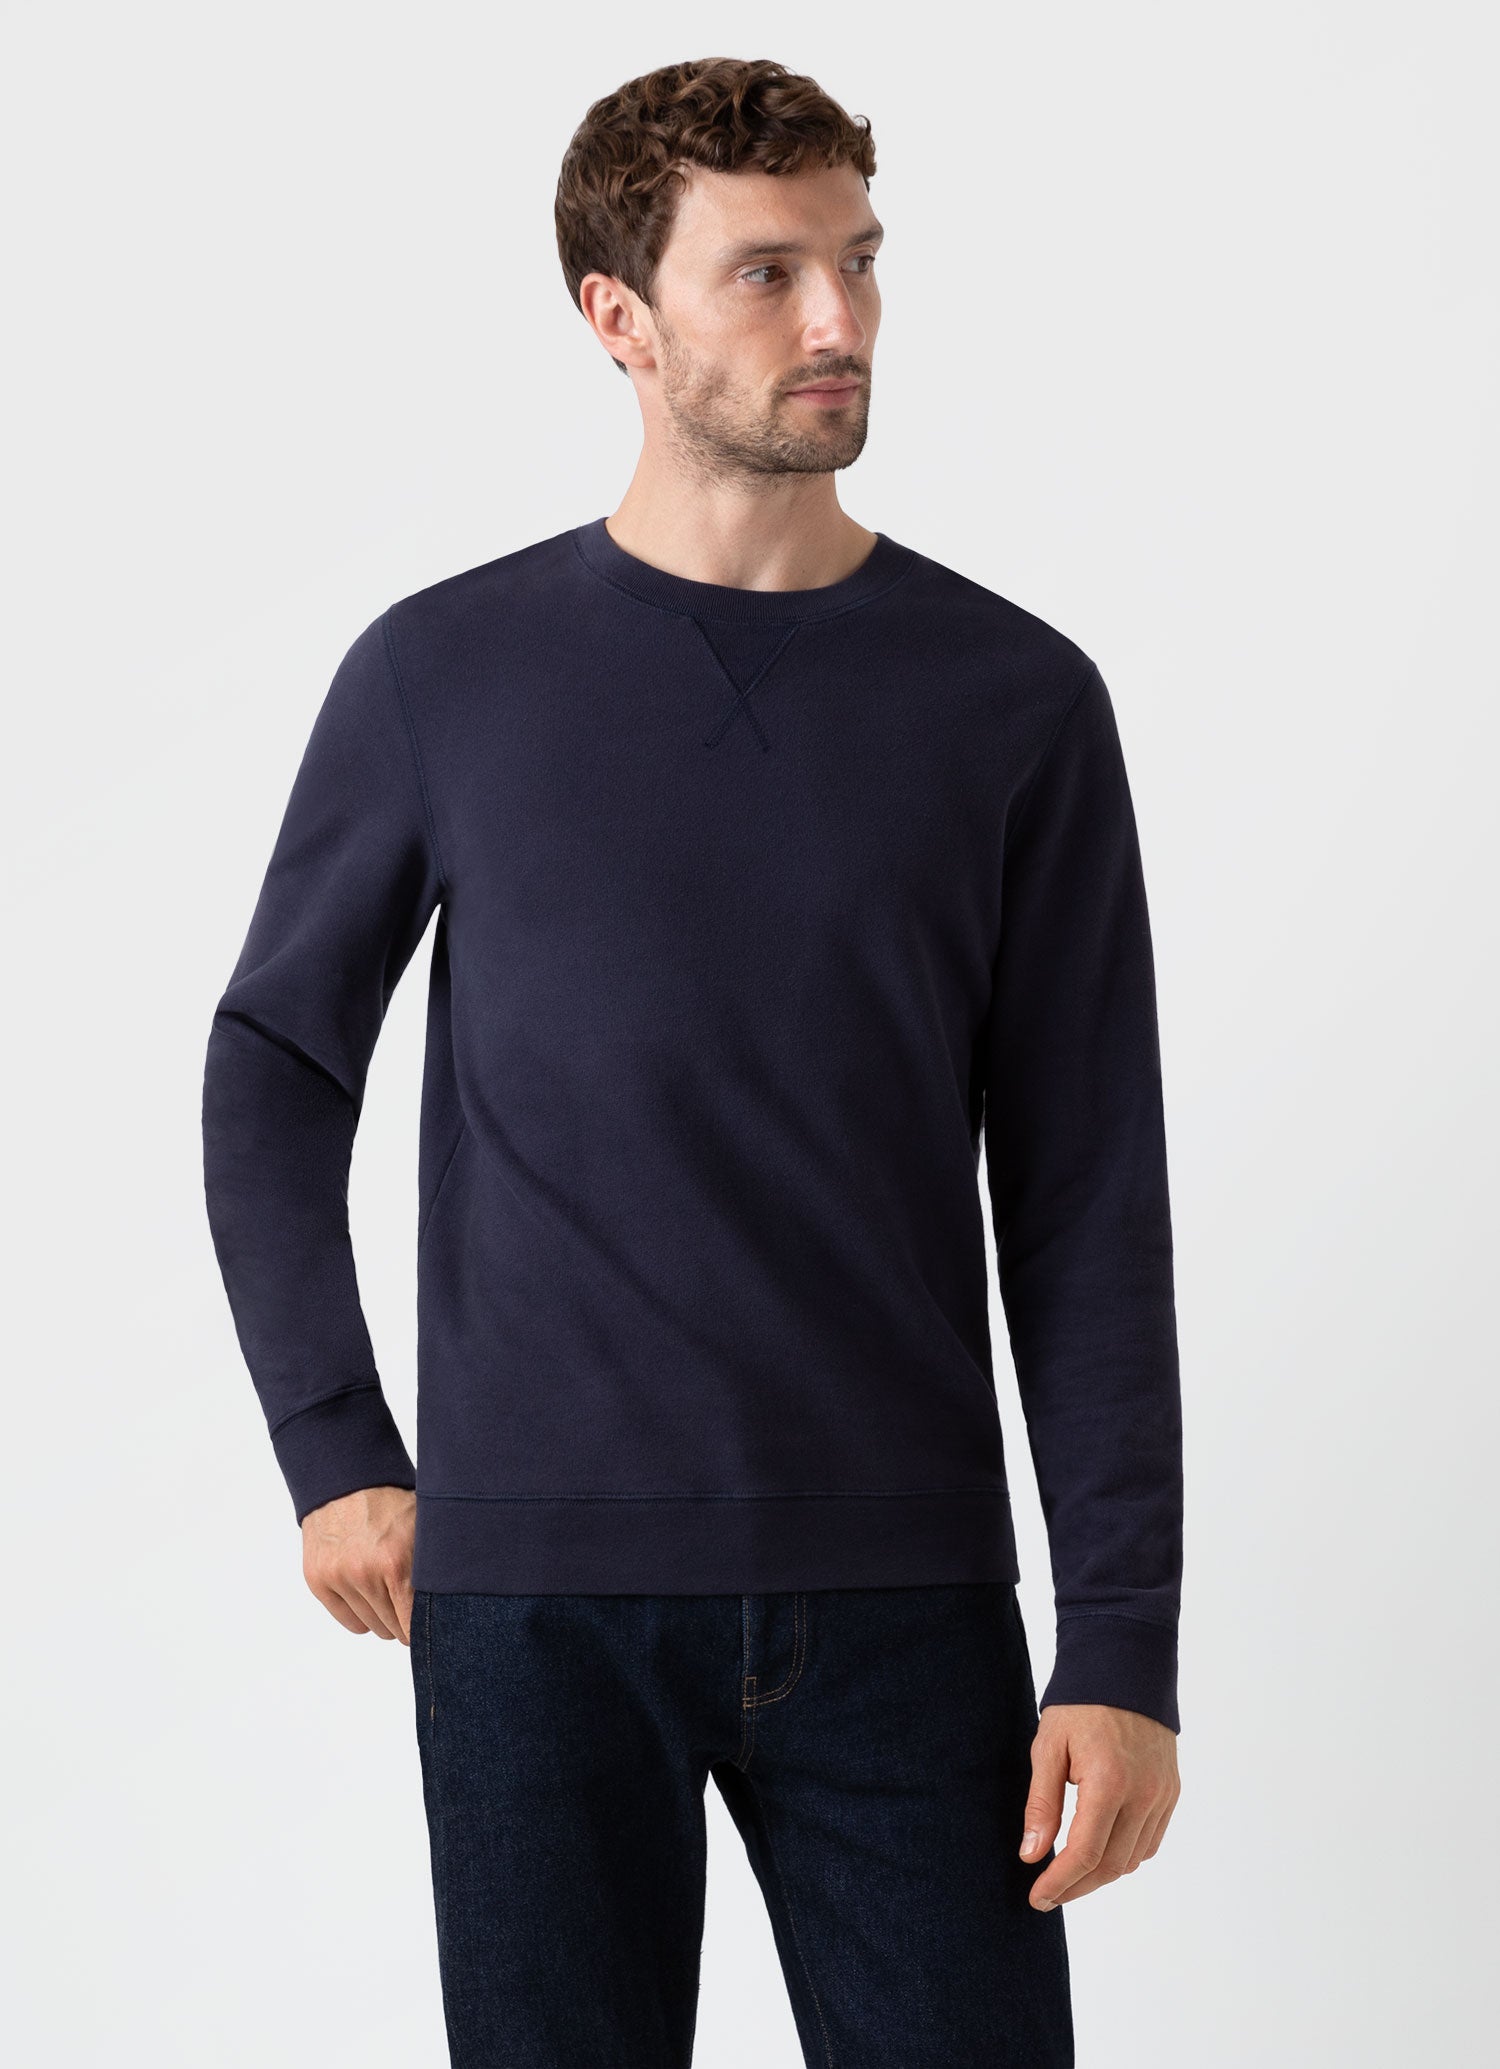 Men's Loopback Sweatshirt in Navy